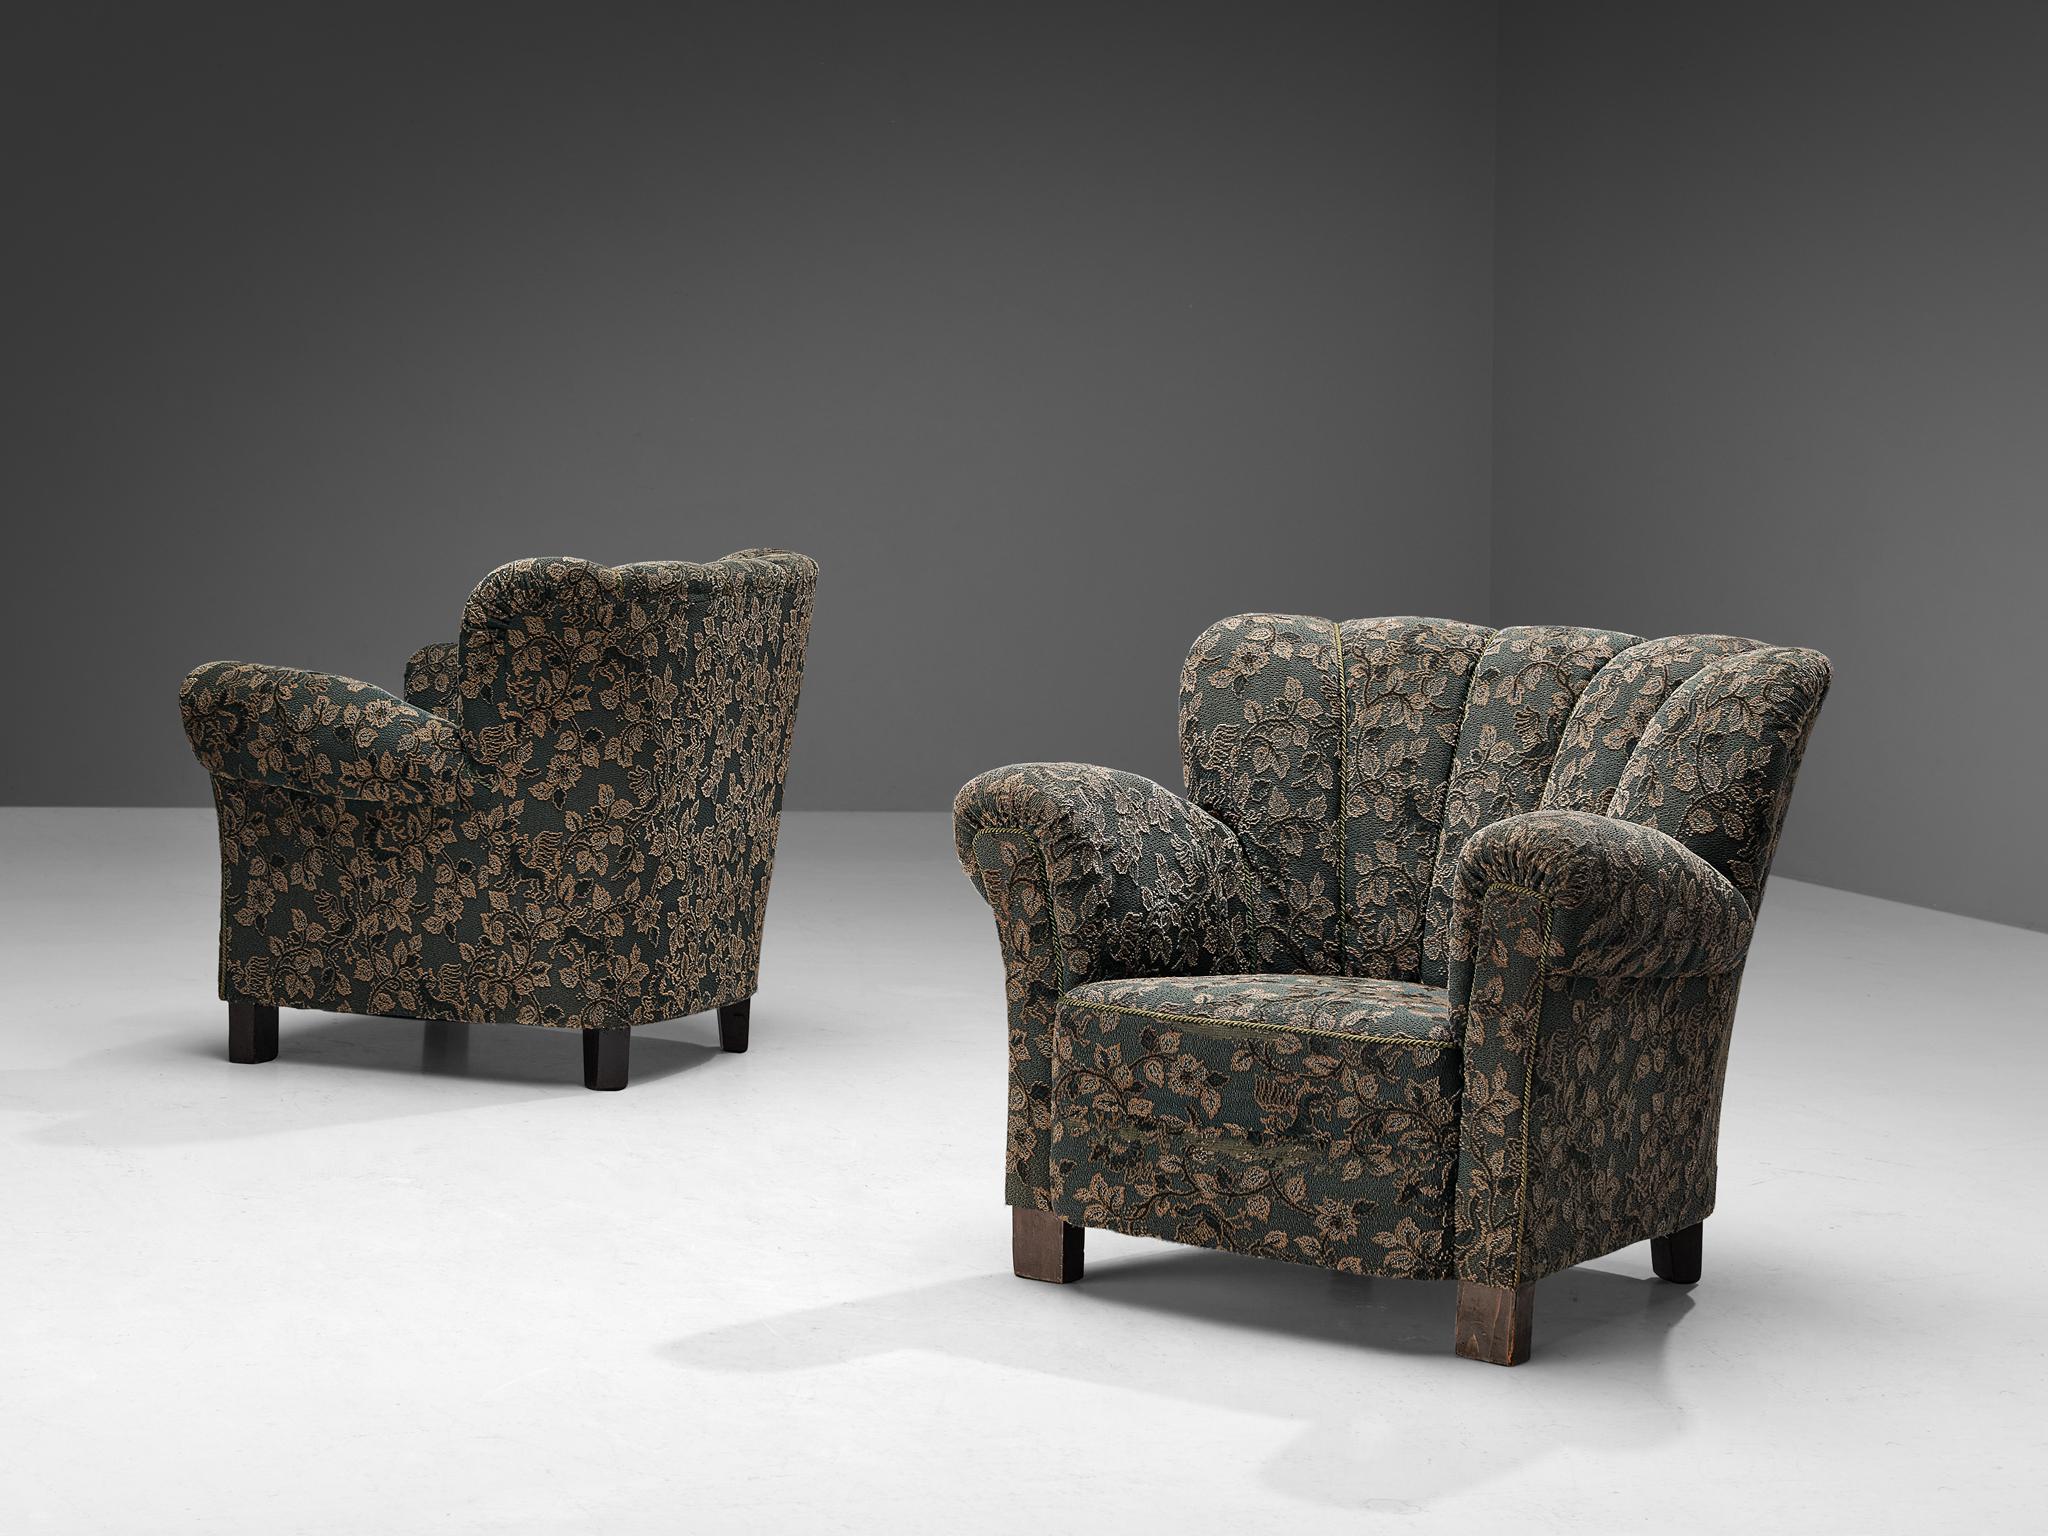 Paar Clubsessel, Stoff, gebeizte Buche, Tschechische Republik, 1950er Jahre.

Diese Stühle sind wunderschön konstruiert, mit einem muschelförmigen Gestell aus divergierenden Linien, das dem recht soliden Design ein offenes und einladendes Aussehen